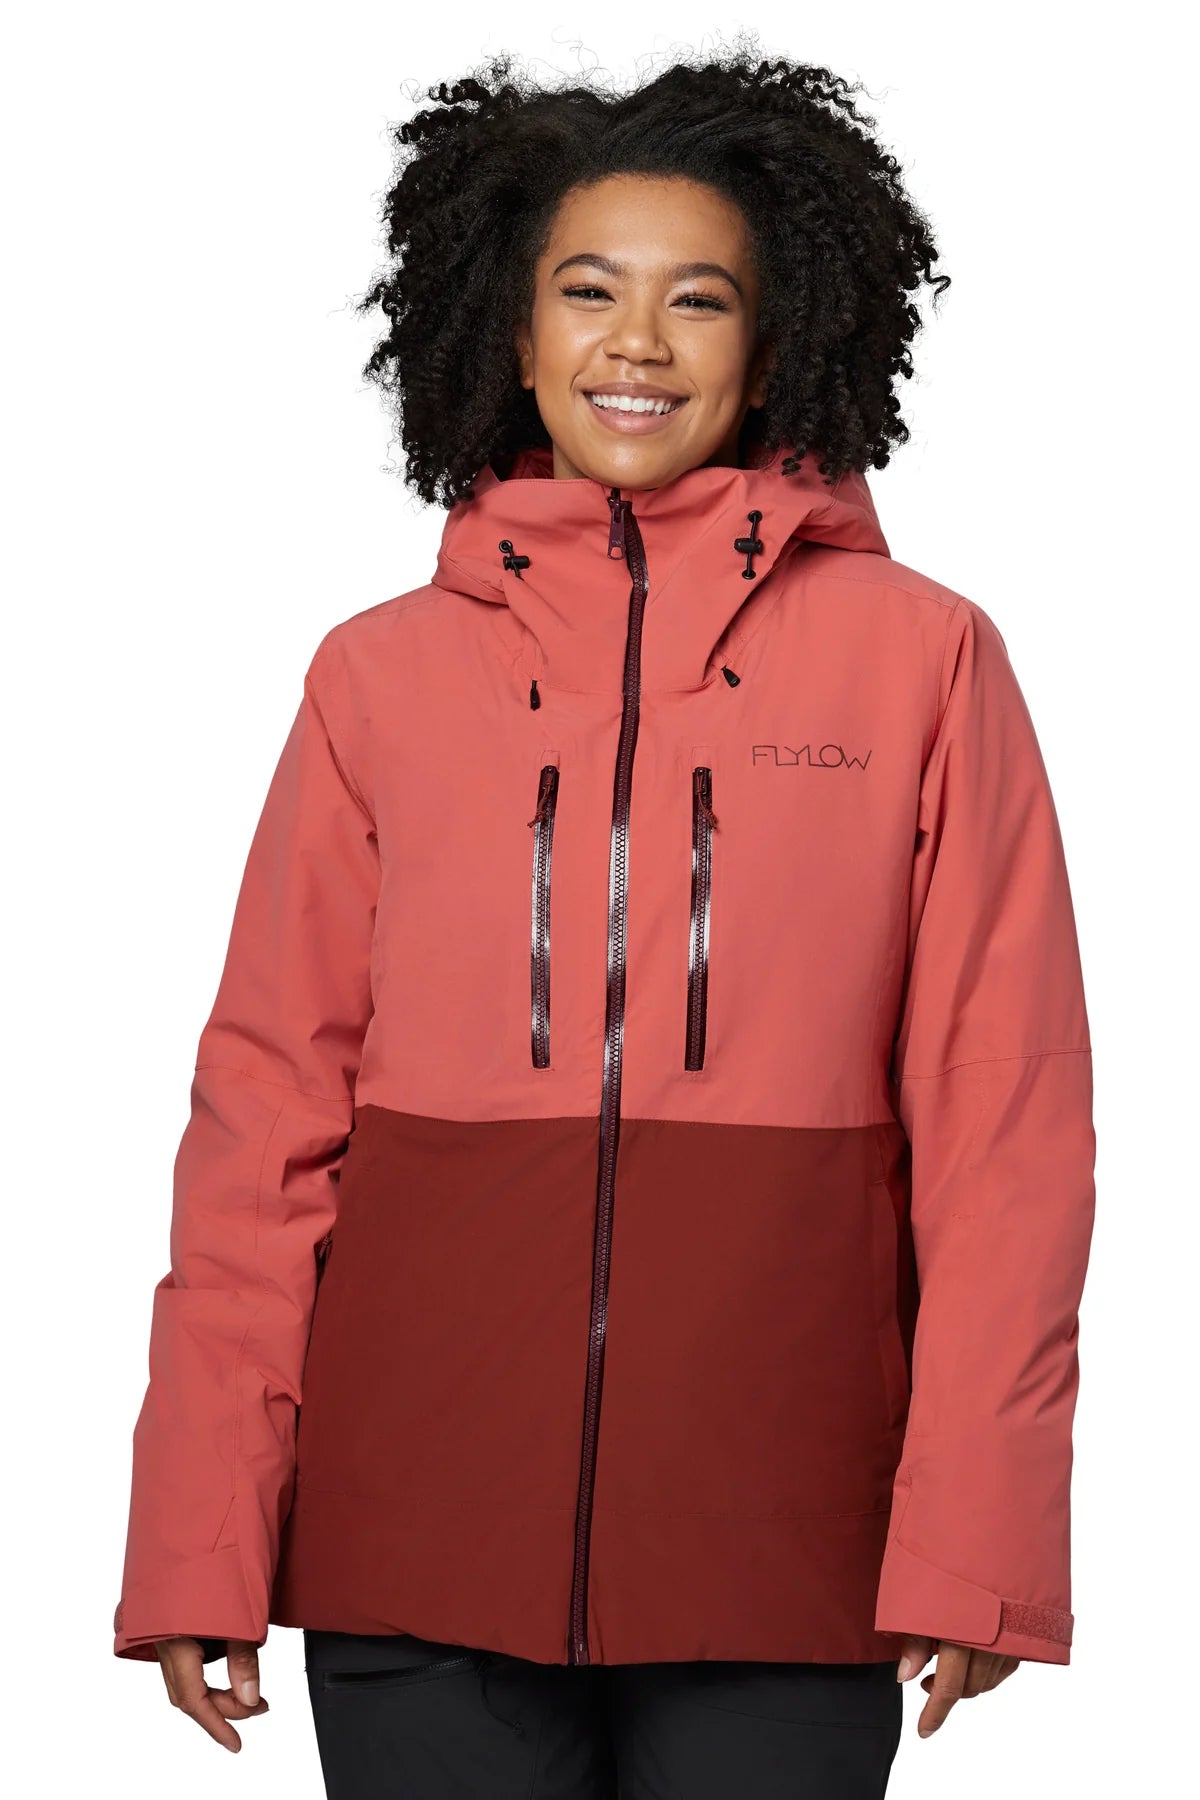  TBMPOY Womens Waterproof Ski Snow Jackets Warm Winter Coats  Fleece Lined Hooded Rain Windbreaker Jacket for Snowboarding Black XS :  Clothing, Shoes & Jewelry